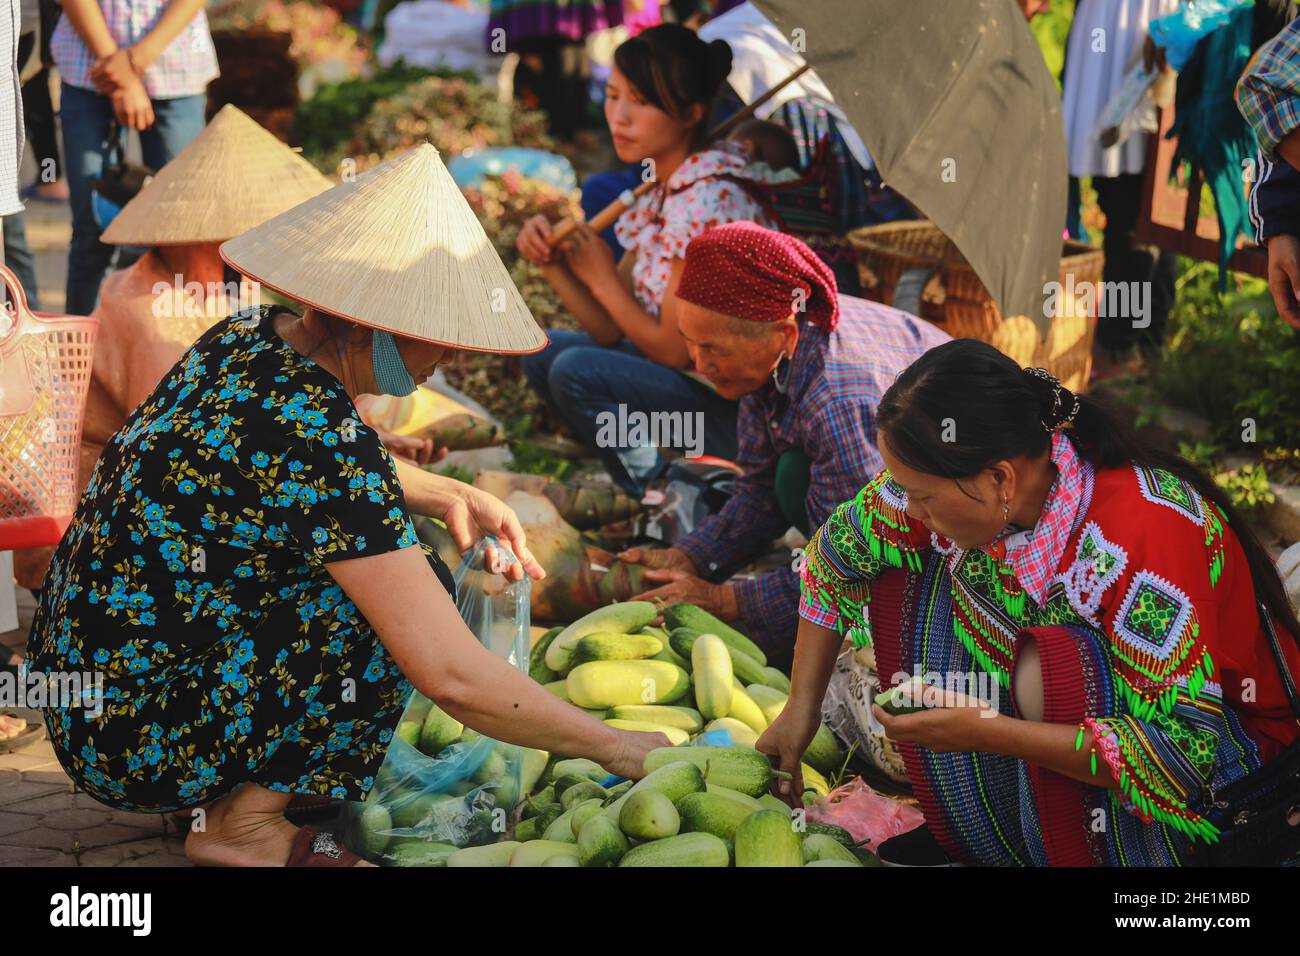 Bac ha, Vietnam - 7 juillet 2019 : attention sélective sur l'achat de légumes vietnamiens au marché de bac Ha, bac Ha est le marché de la tribu des collines dans le nord du Vietnam Banque D'Images